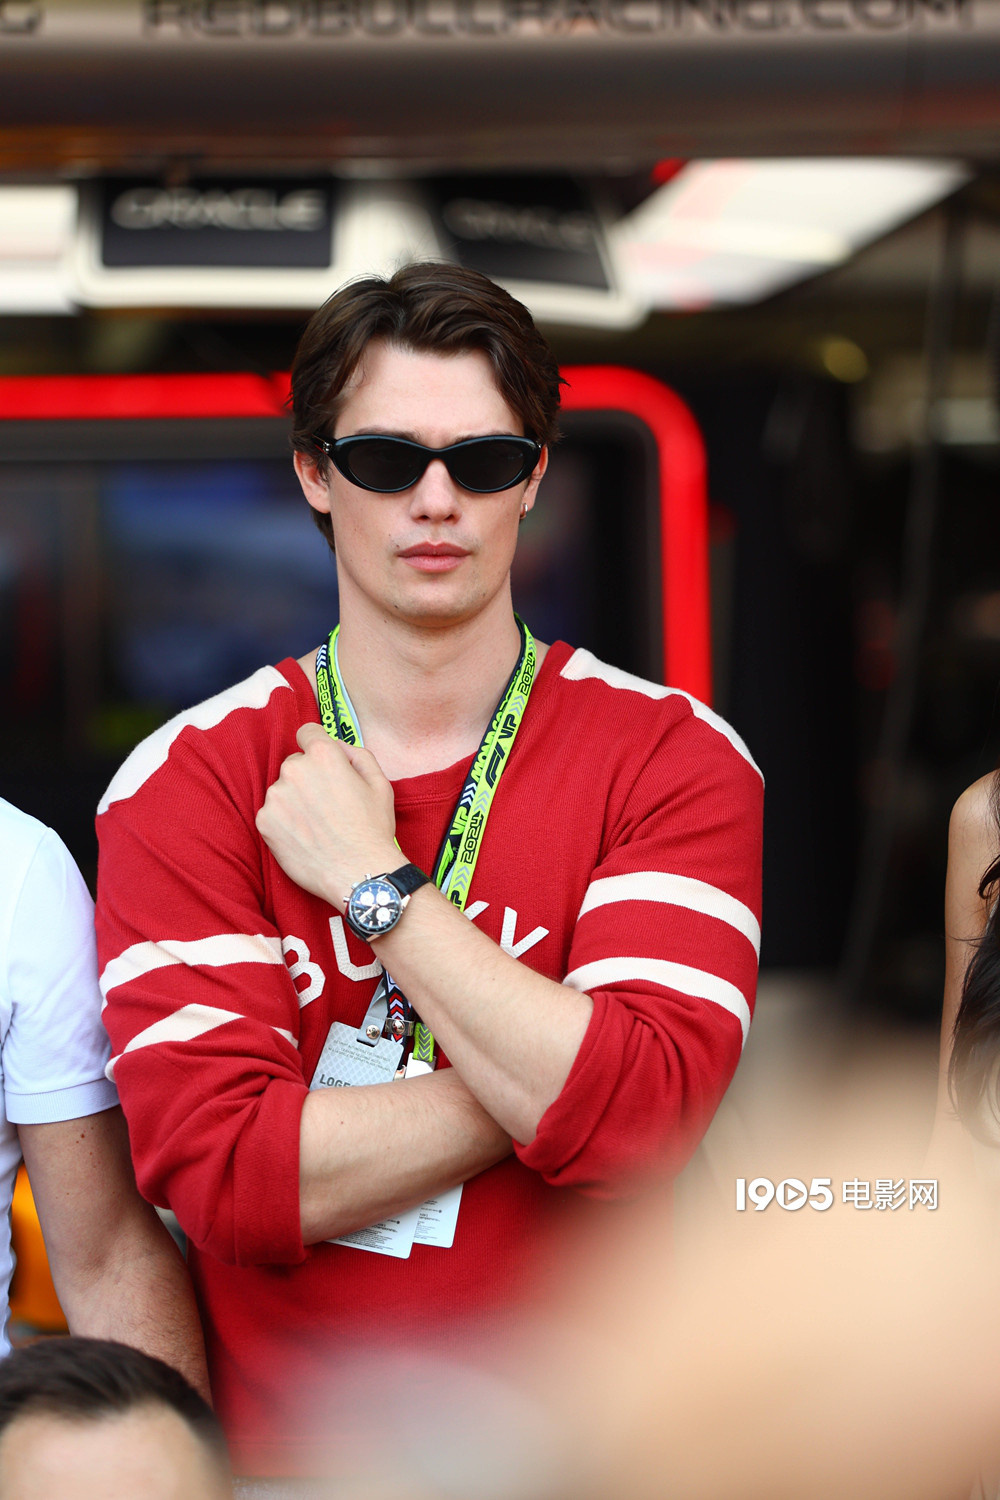 安雅、尼古拉斯·加利齐纳等 现身F1摩纳哥大奖赛  第1张